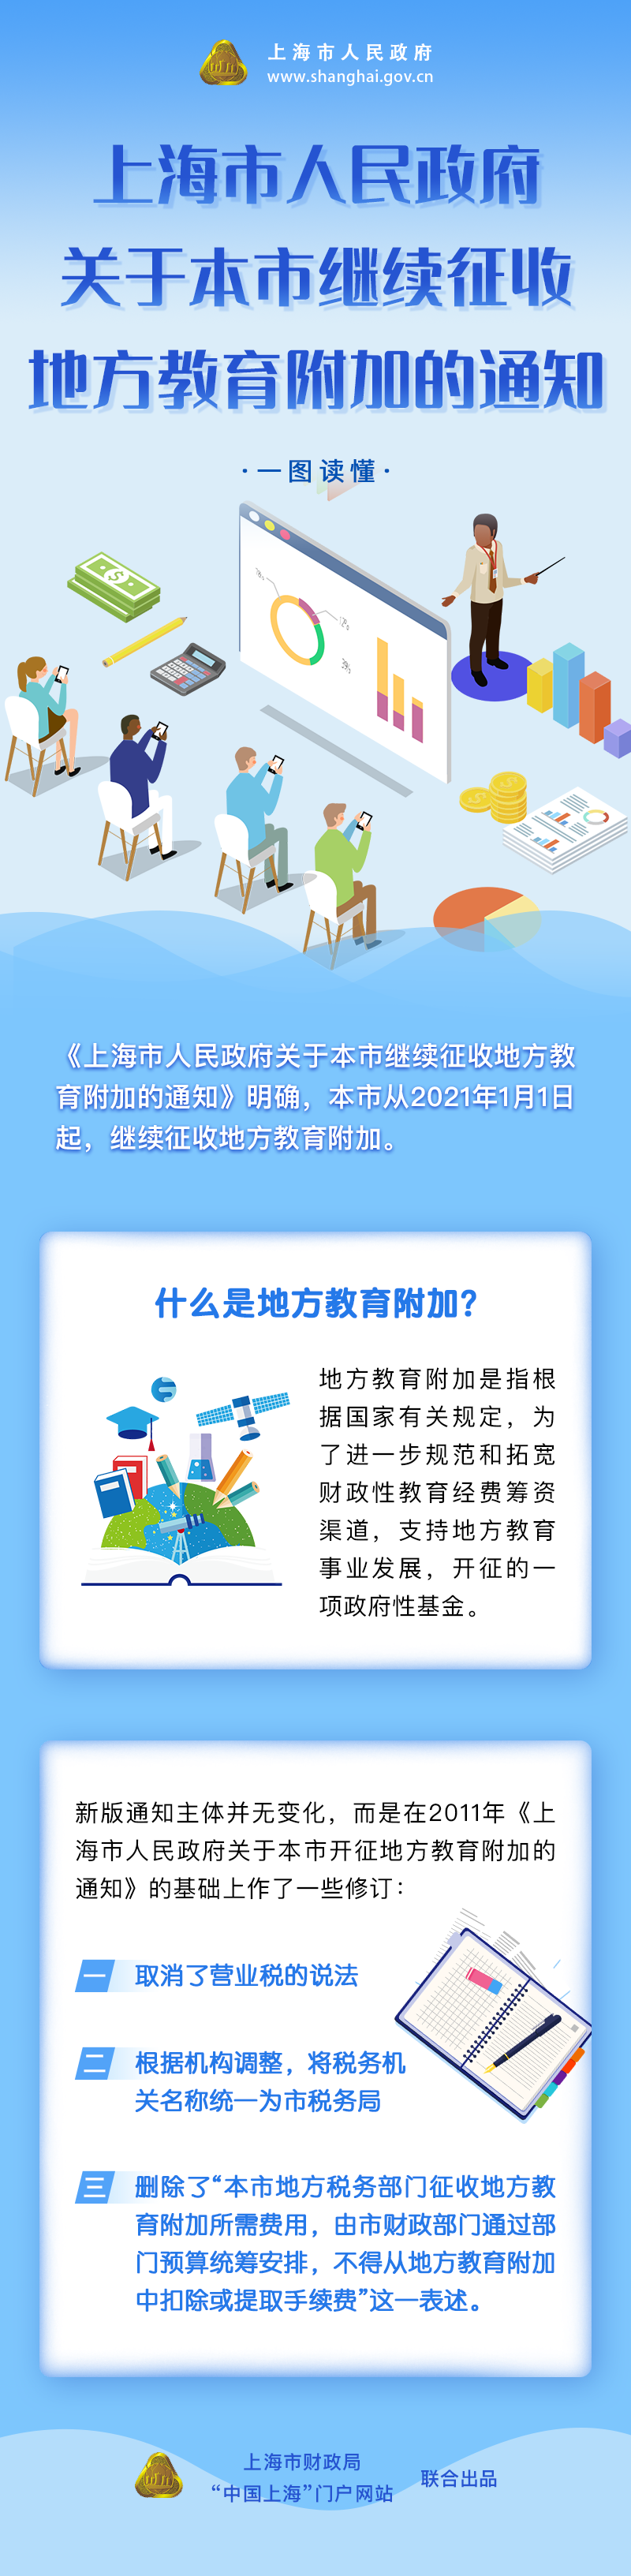 《上海市人民政府关于继续征收地方教育附加的通知》修订要点图解.png